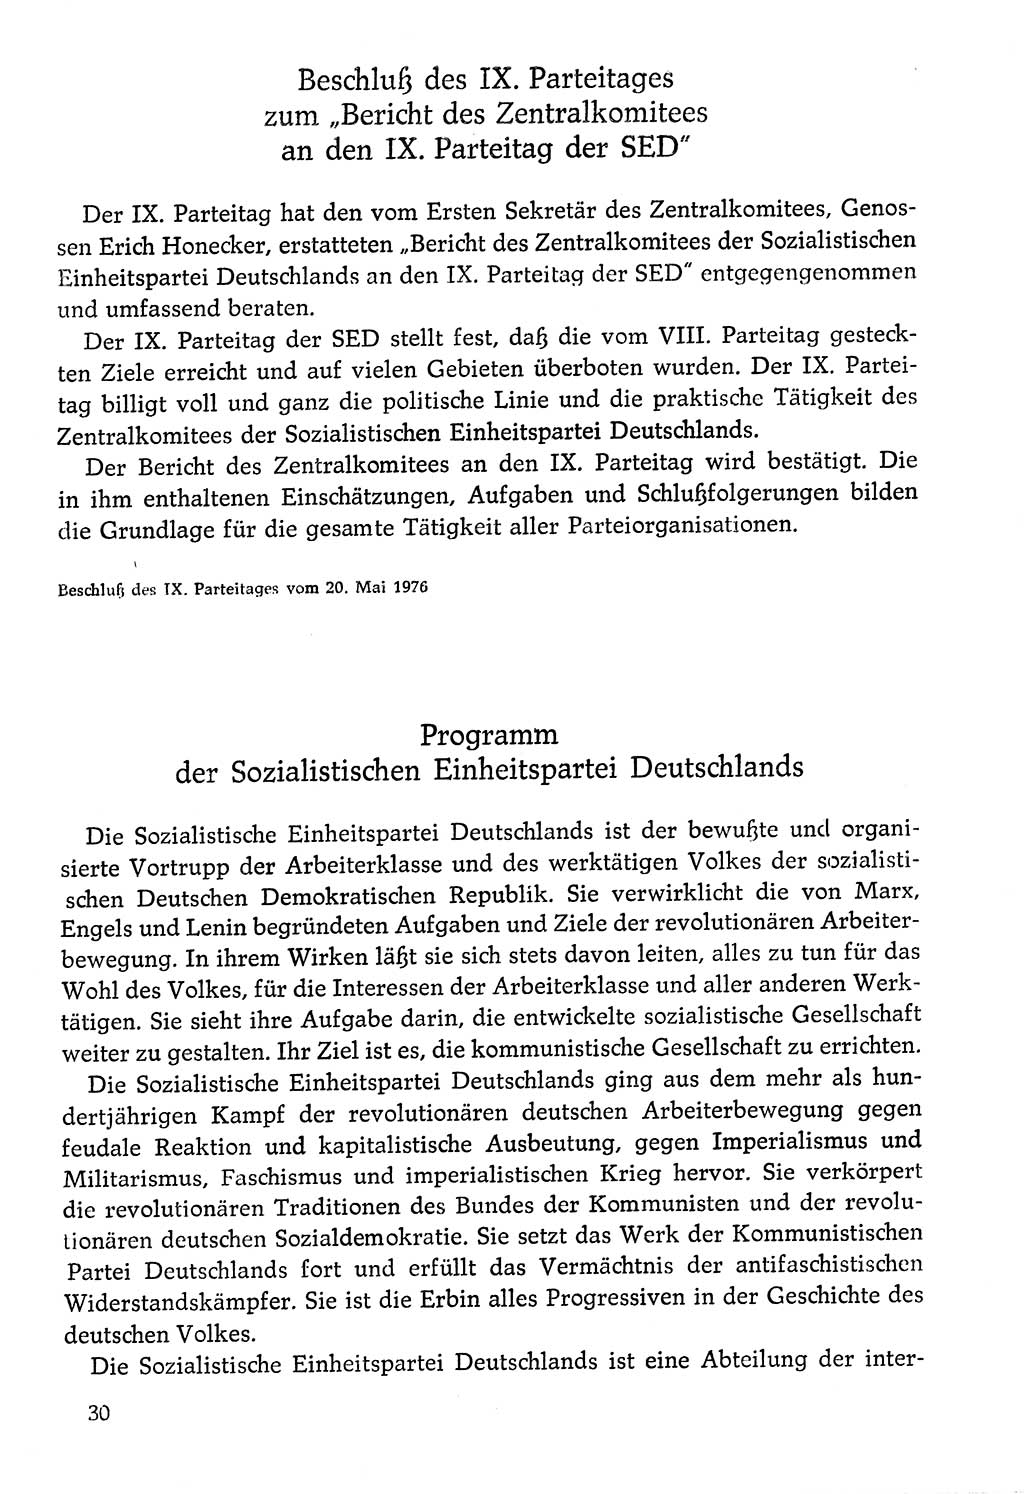 Dokumente der Sozialistischen Einheitspartei Deutschlands (SED) [Deutsche Demokratische Republik (DDR)] 1976-1977, Seite 30 (Dok. SED DDR 1976-1977, S. 30)